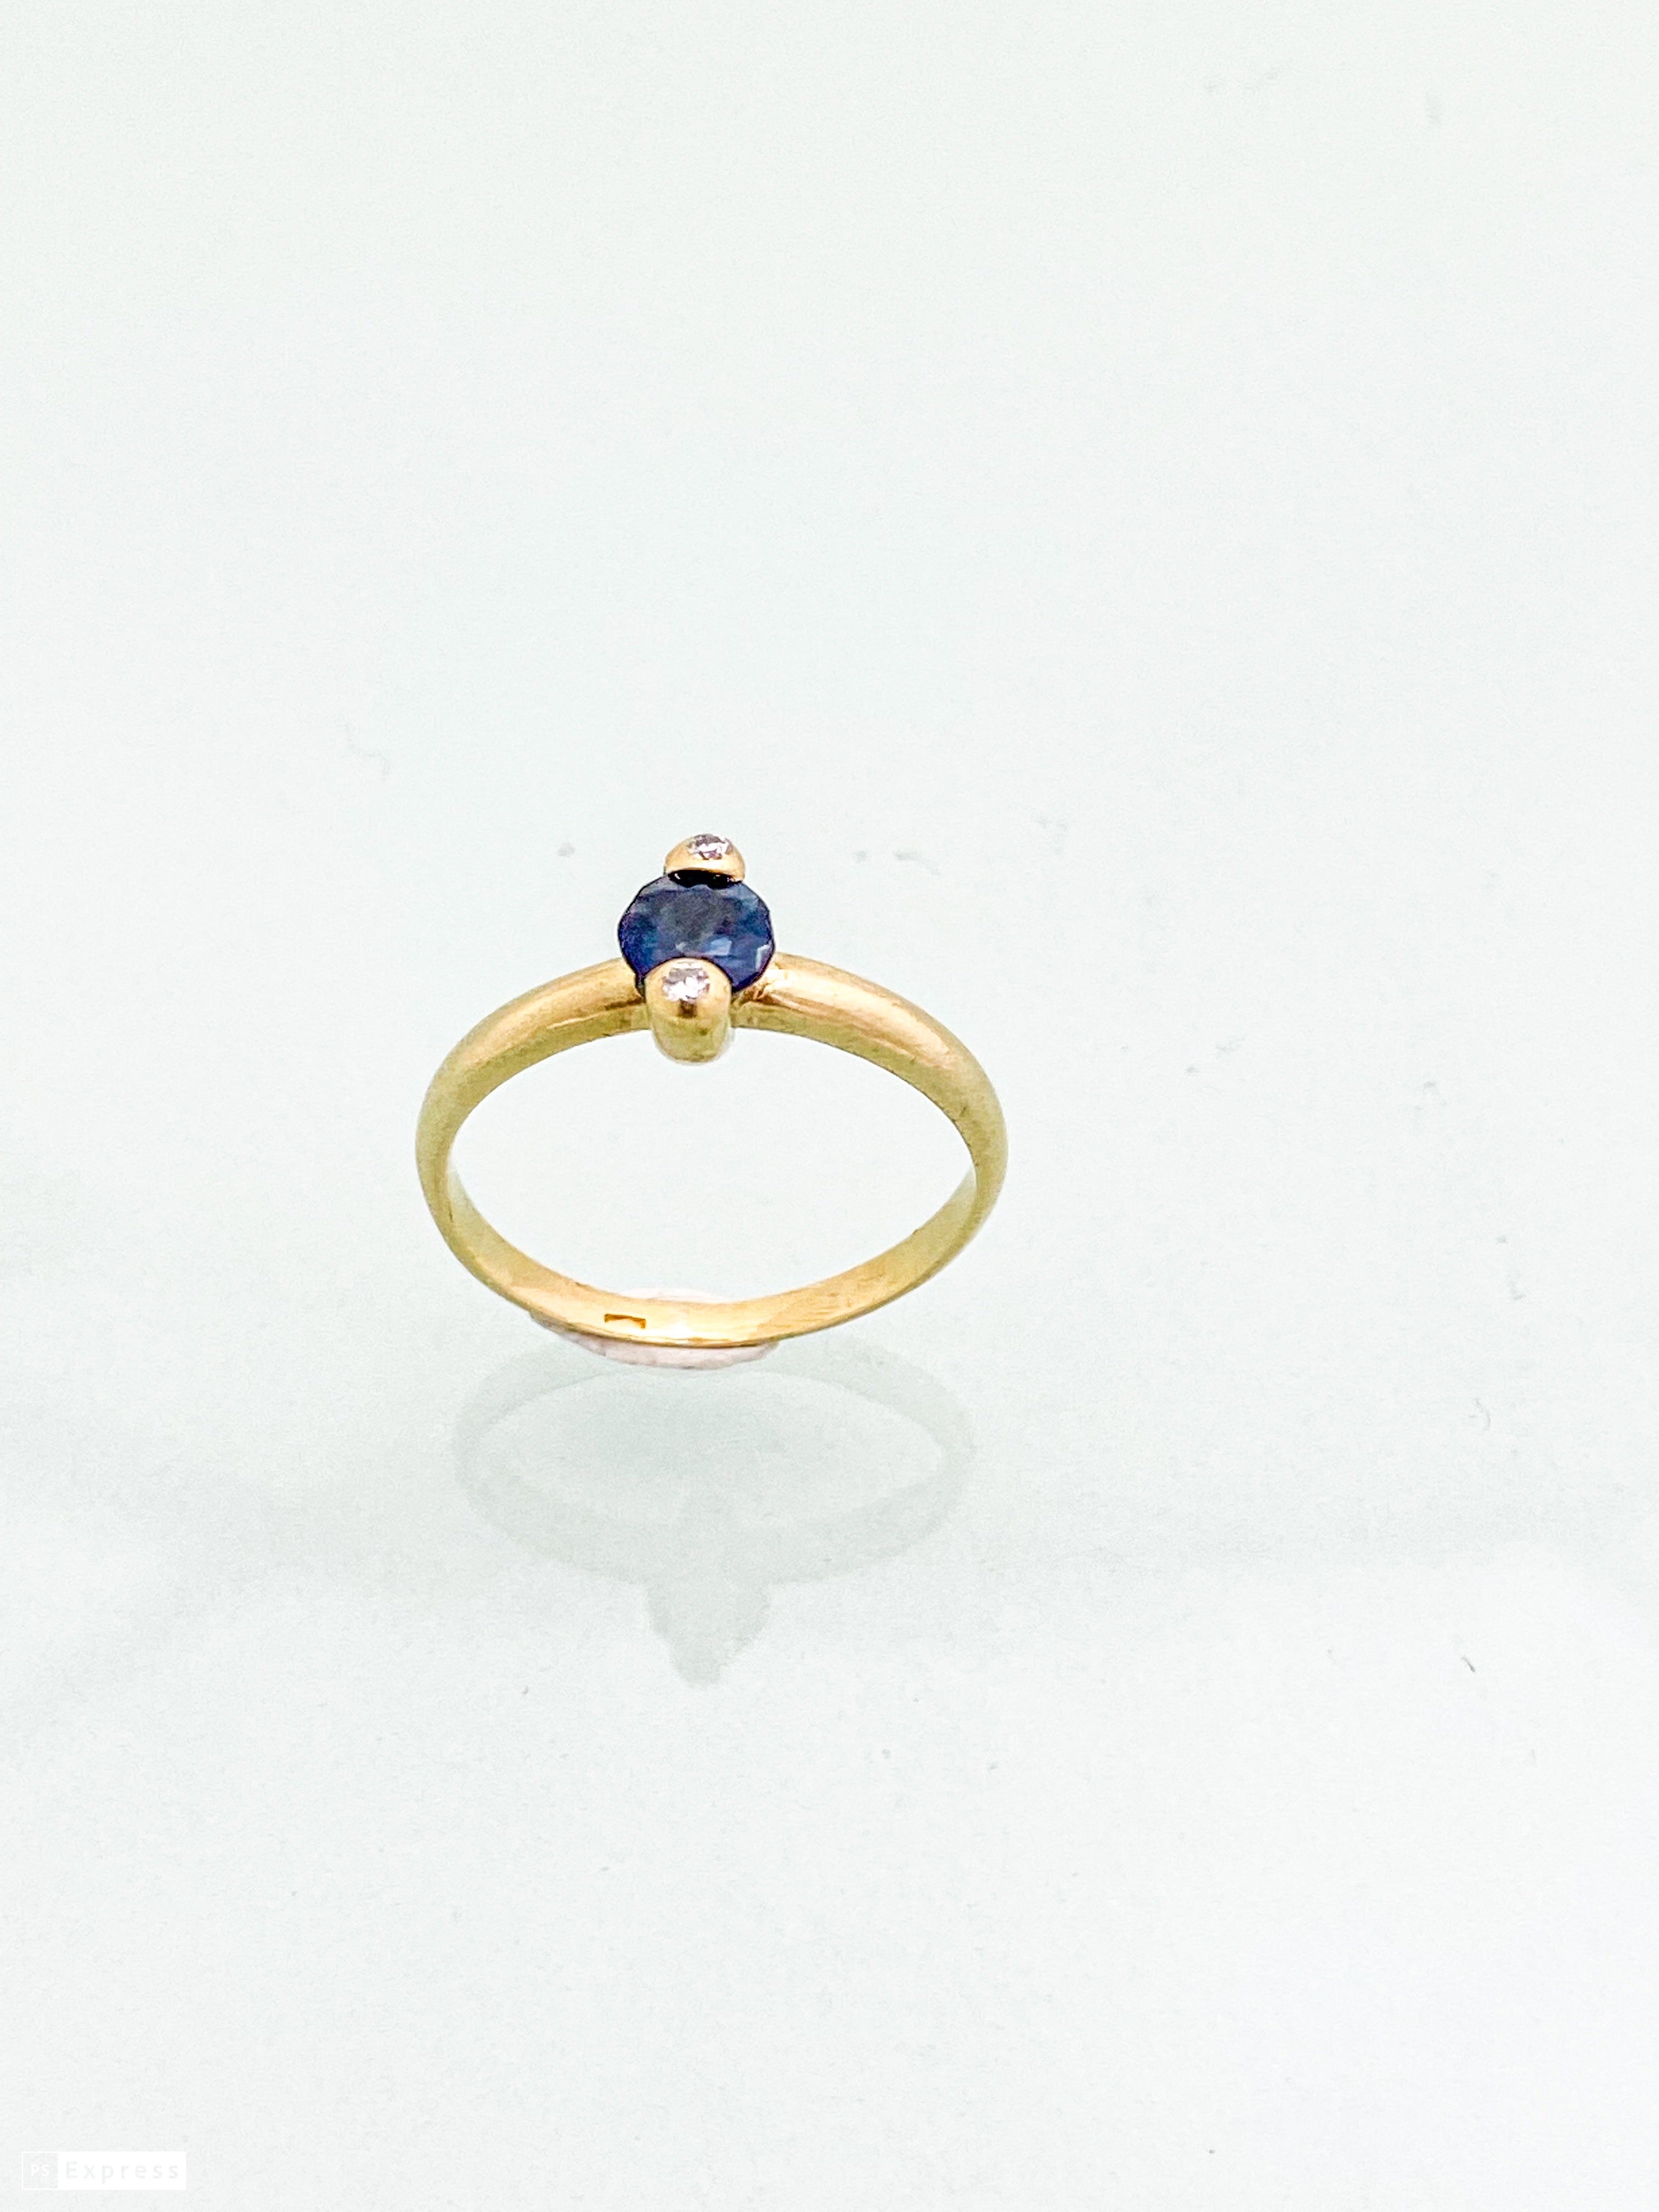 טבעת זהב צהוב 14 קארט עם אבן חן מרכזית כחולה ובצדדים יהלומים